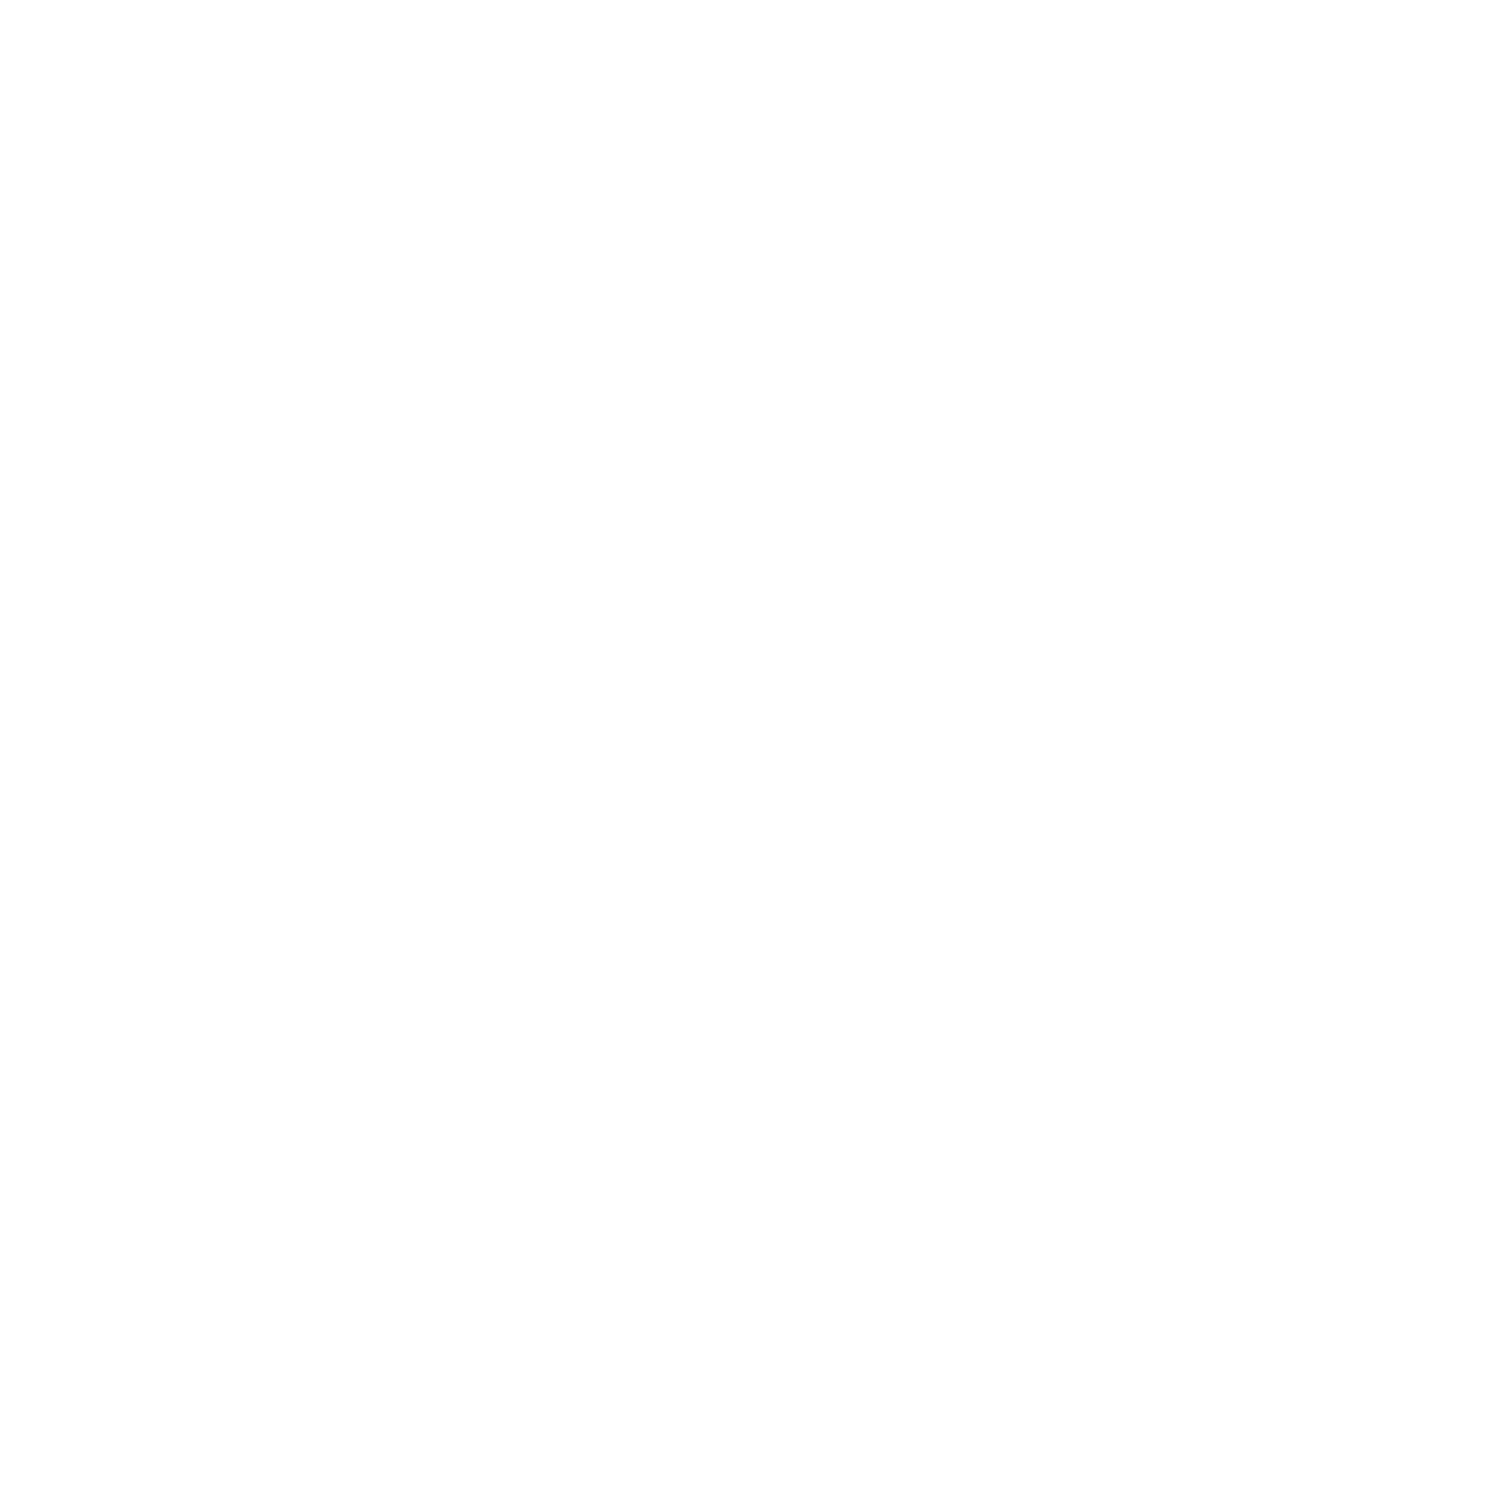 Her Moxie